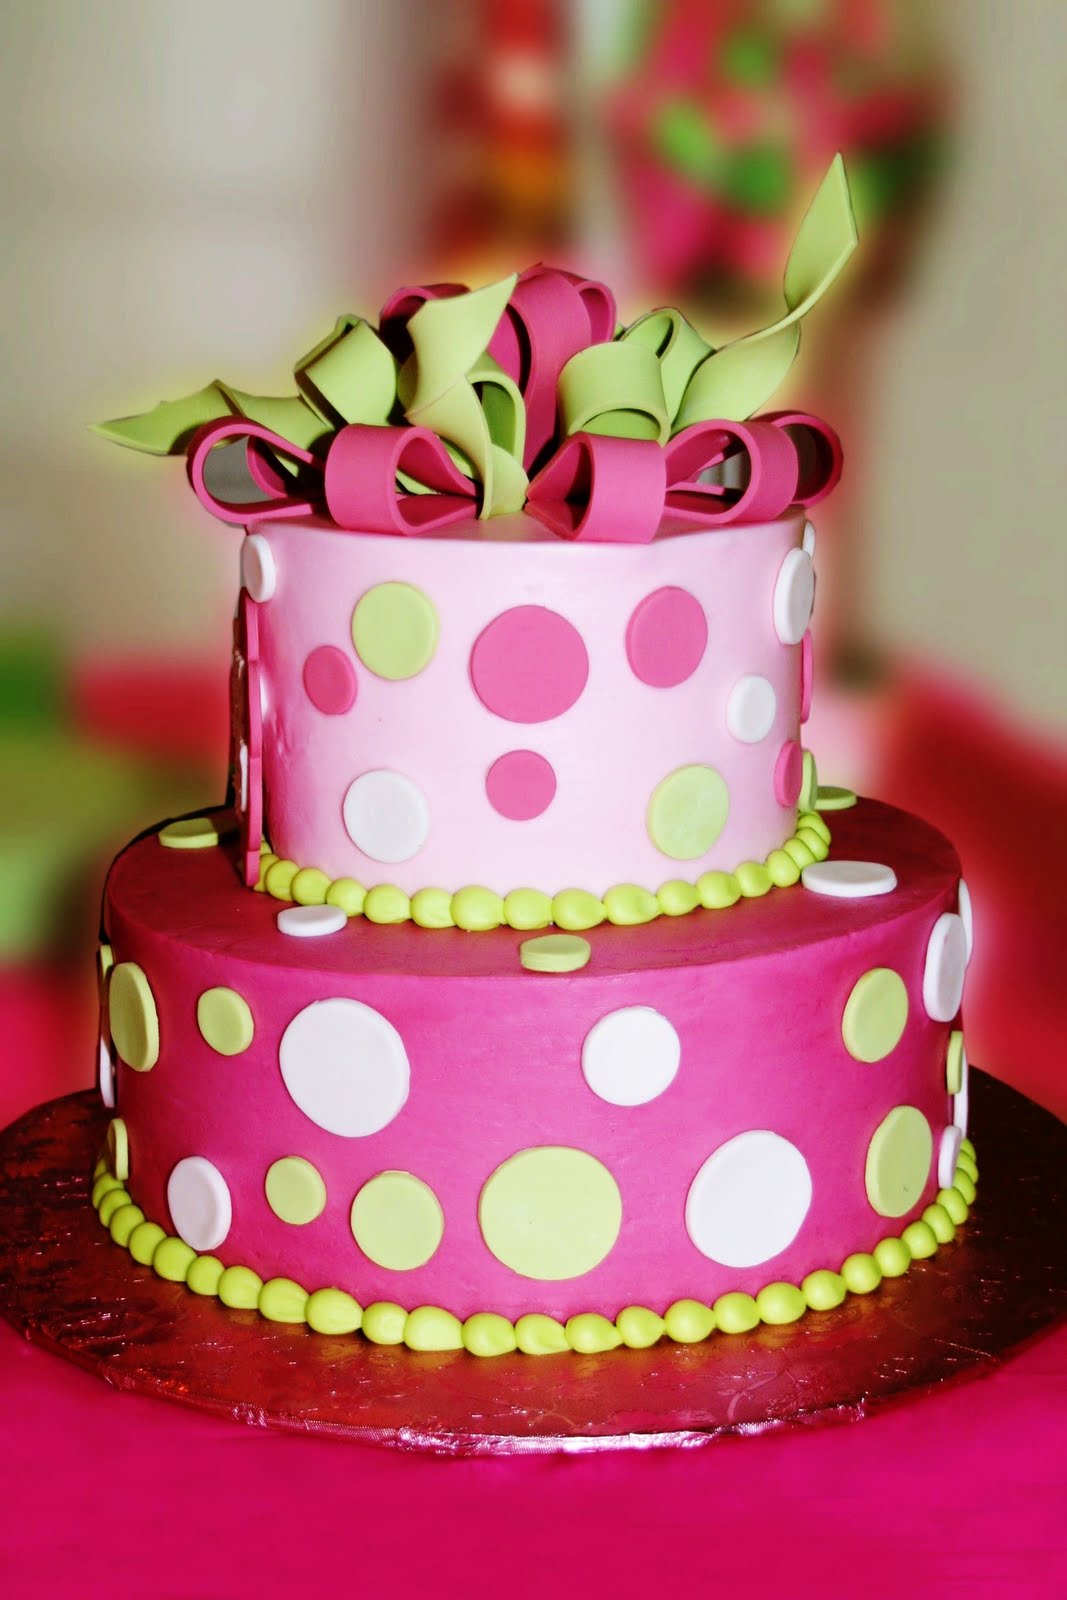 Polka Dot Cake Designs 1